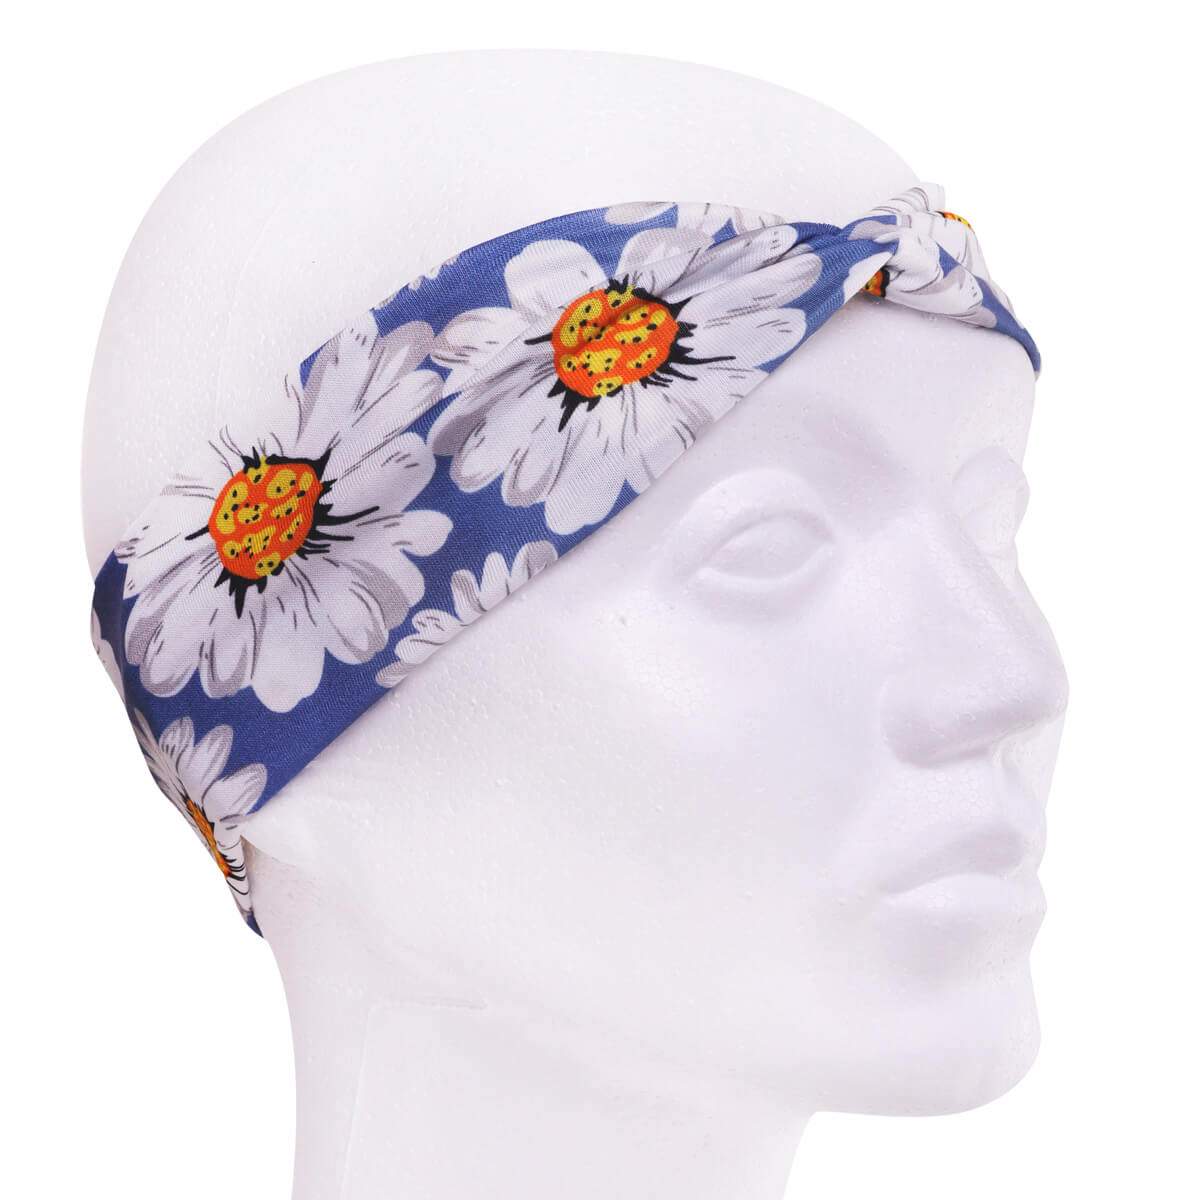 Daisy hairband with elastic headband